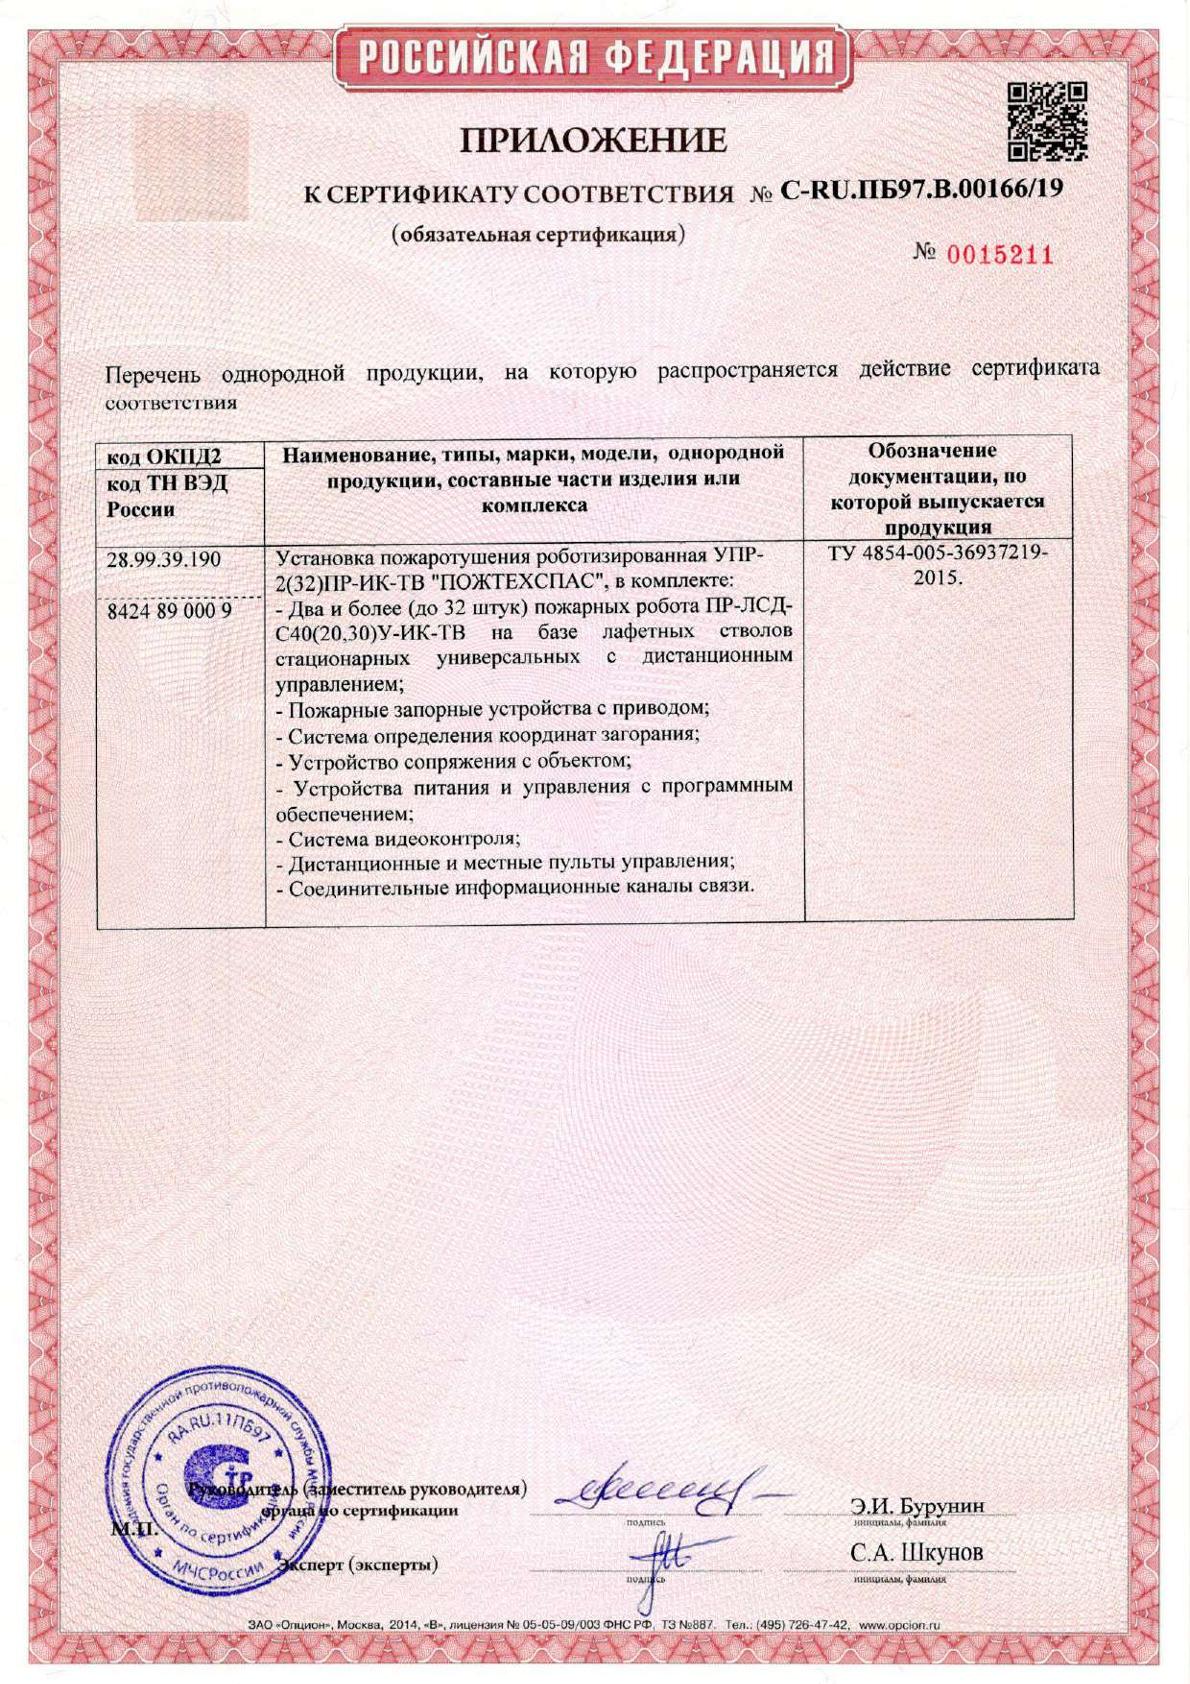 Сертификат соответствия установка пожаротушения роботизированная УПР 2 приложение 1